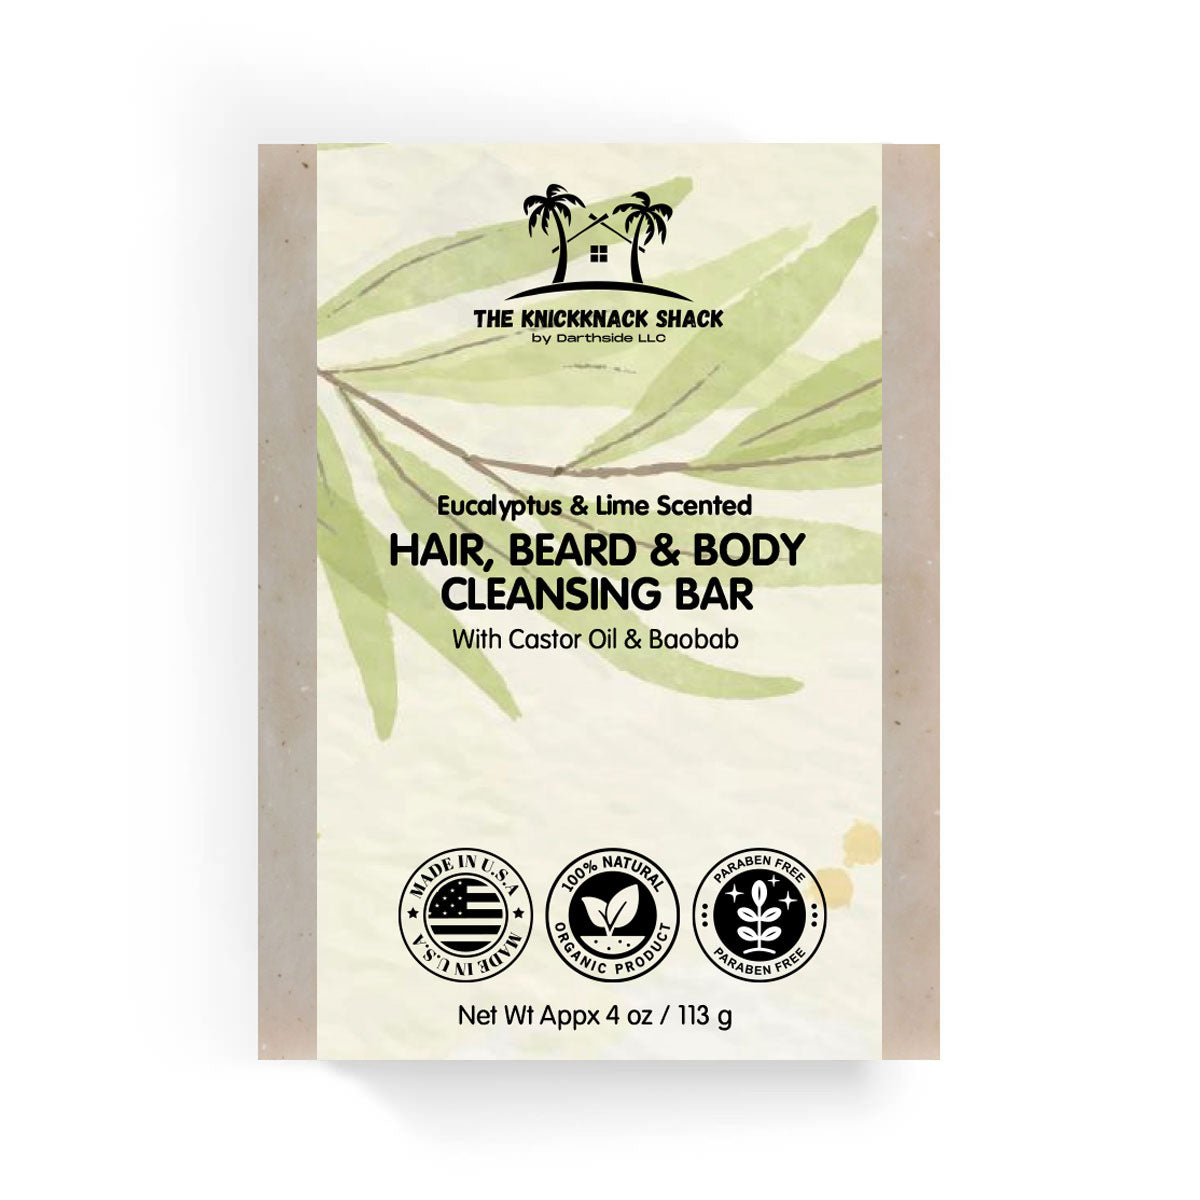 Barre nettoyante cheveux, barbe et corps parfumée à l'eucalyptus et au citron vert avec de l'huile de ricin et du baobab